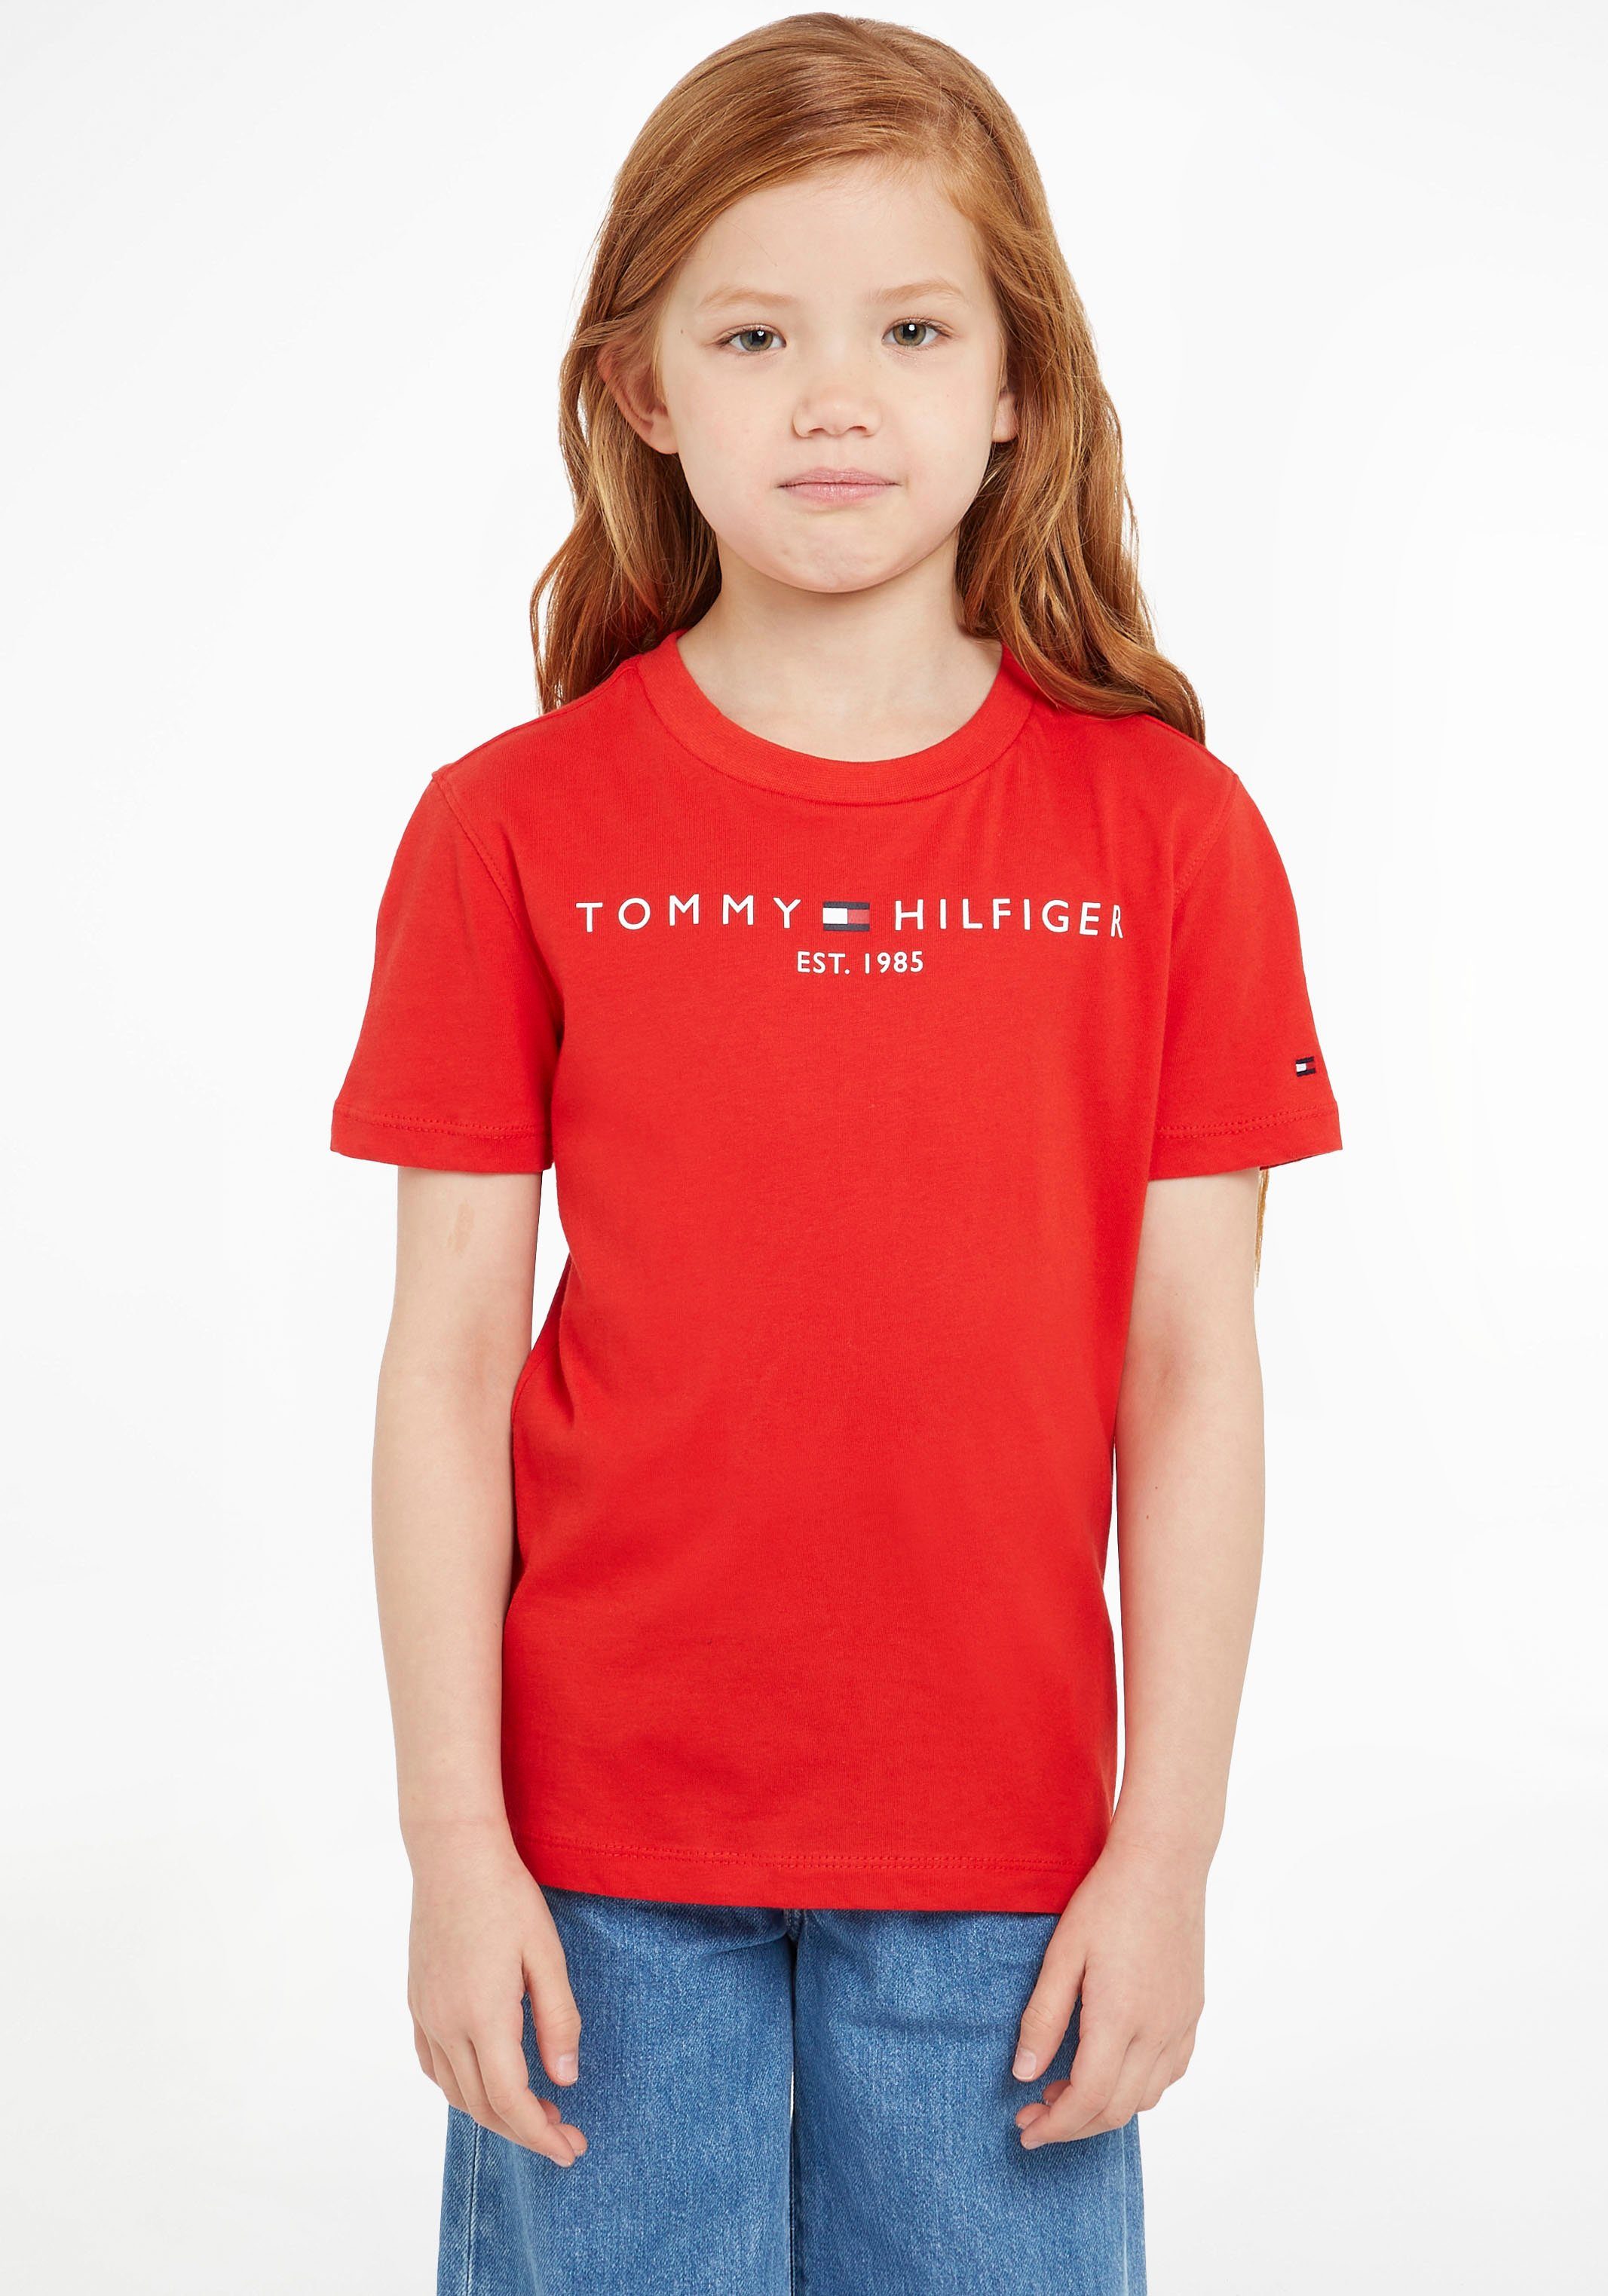 Tommy Hilfiger T-Shirt ESSENTIAL TEE Kinder und Jungen Junior Kids MiniMe,für Mädchen